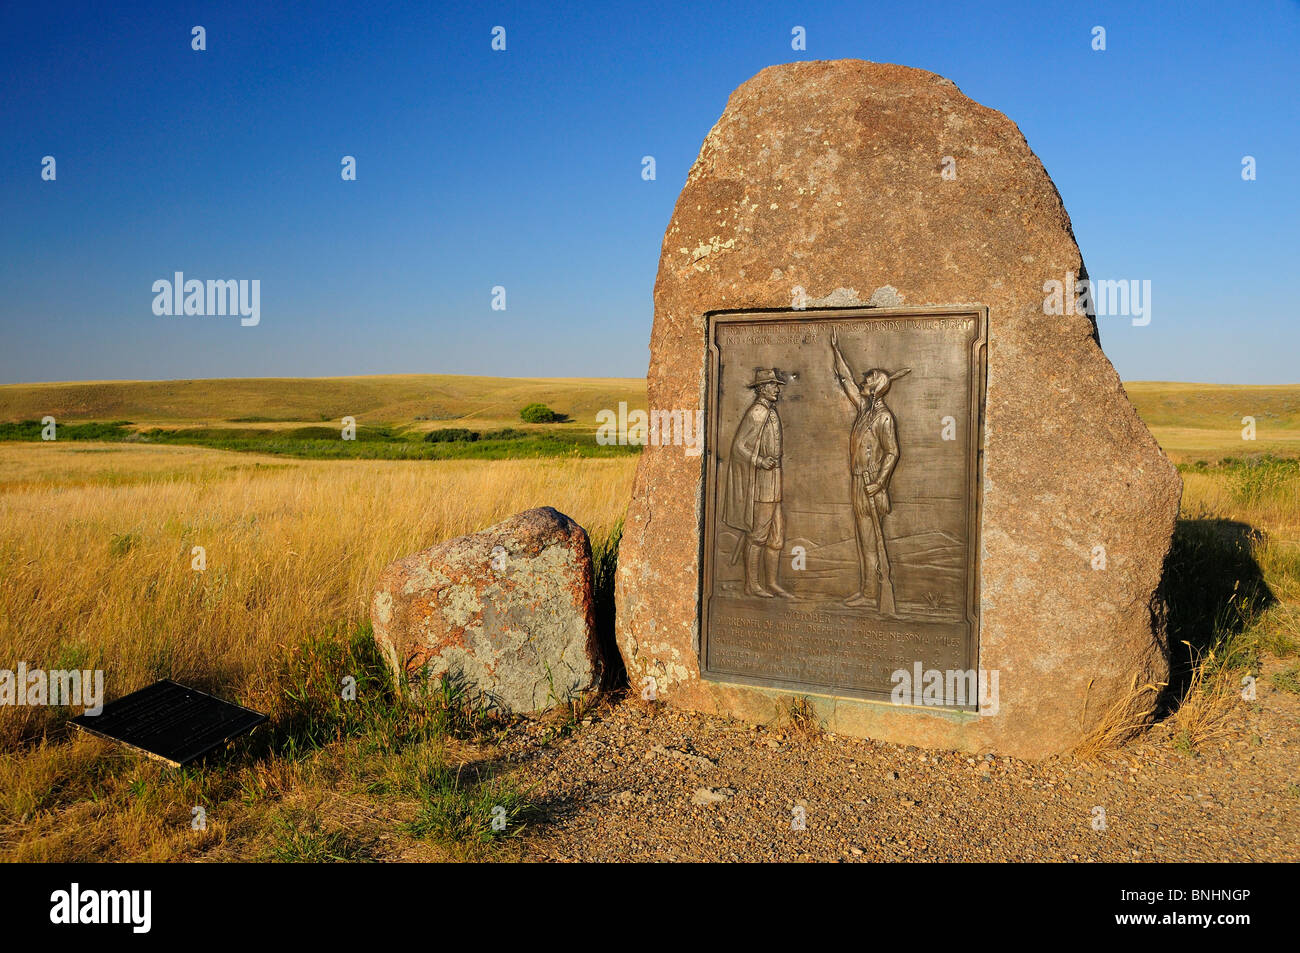 USA Bear Paw Battlefield Nez Perce National Historic Park in der Nähe von Chinook Montana Ureinwohner amerikanische Eingeborene erste nation Stockfoto